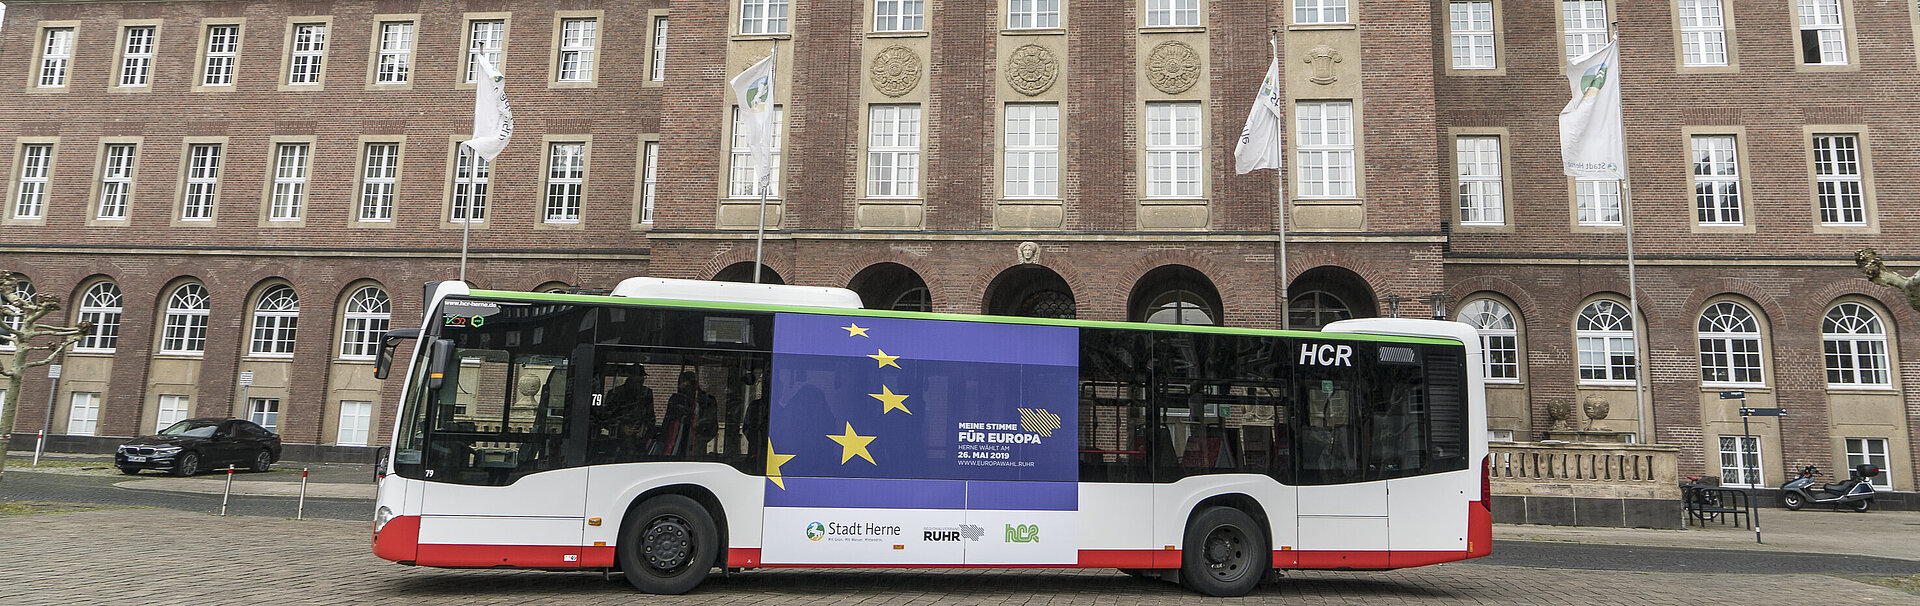 Europabus der HCR in Herne, Foto: Stadt Herne / Thomas Schmidt